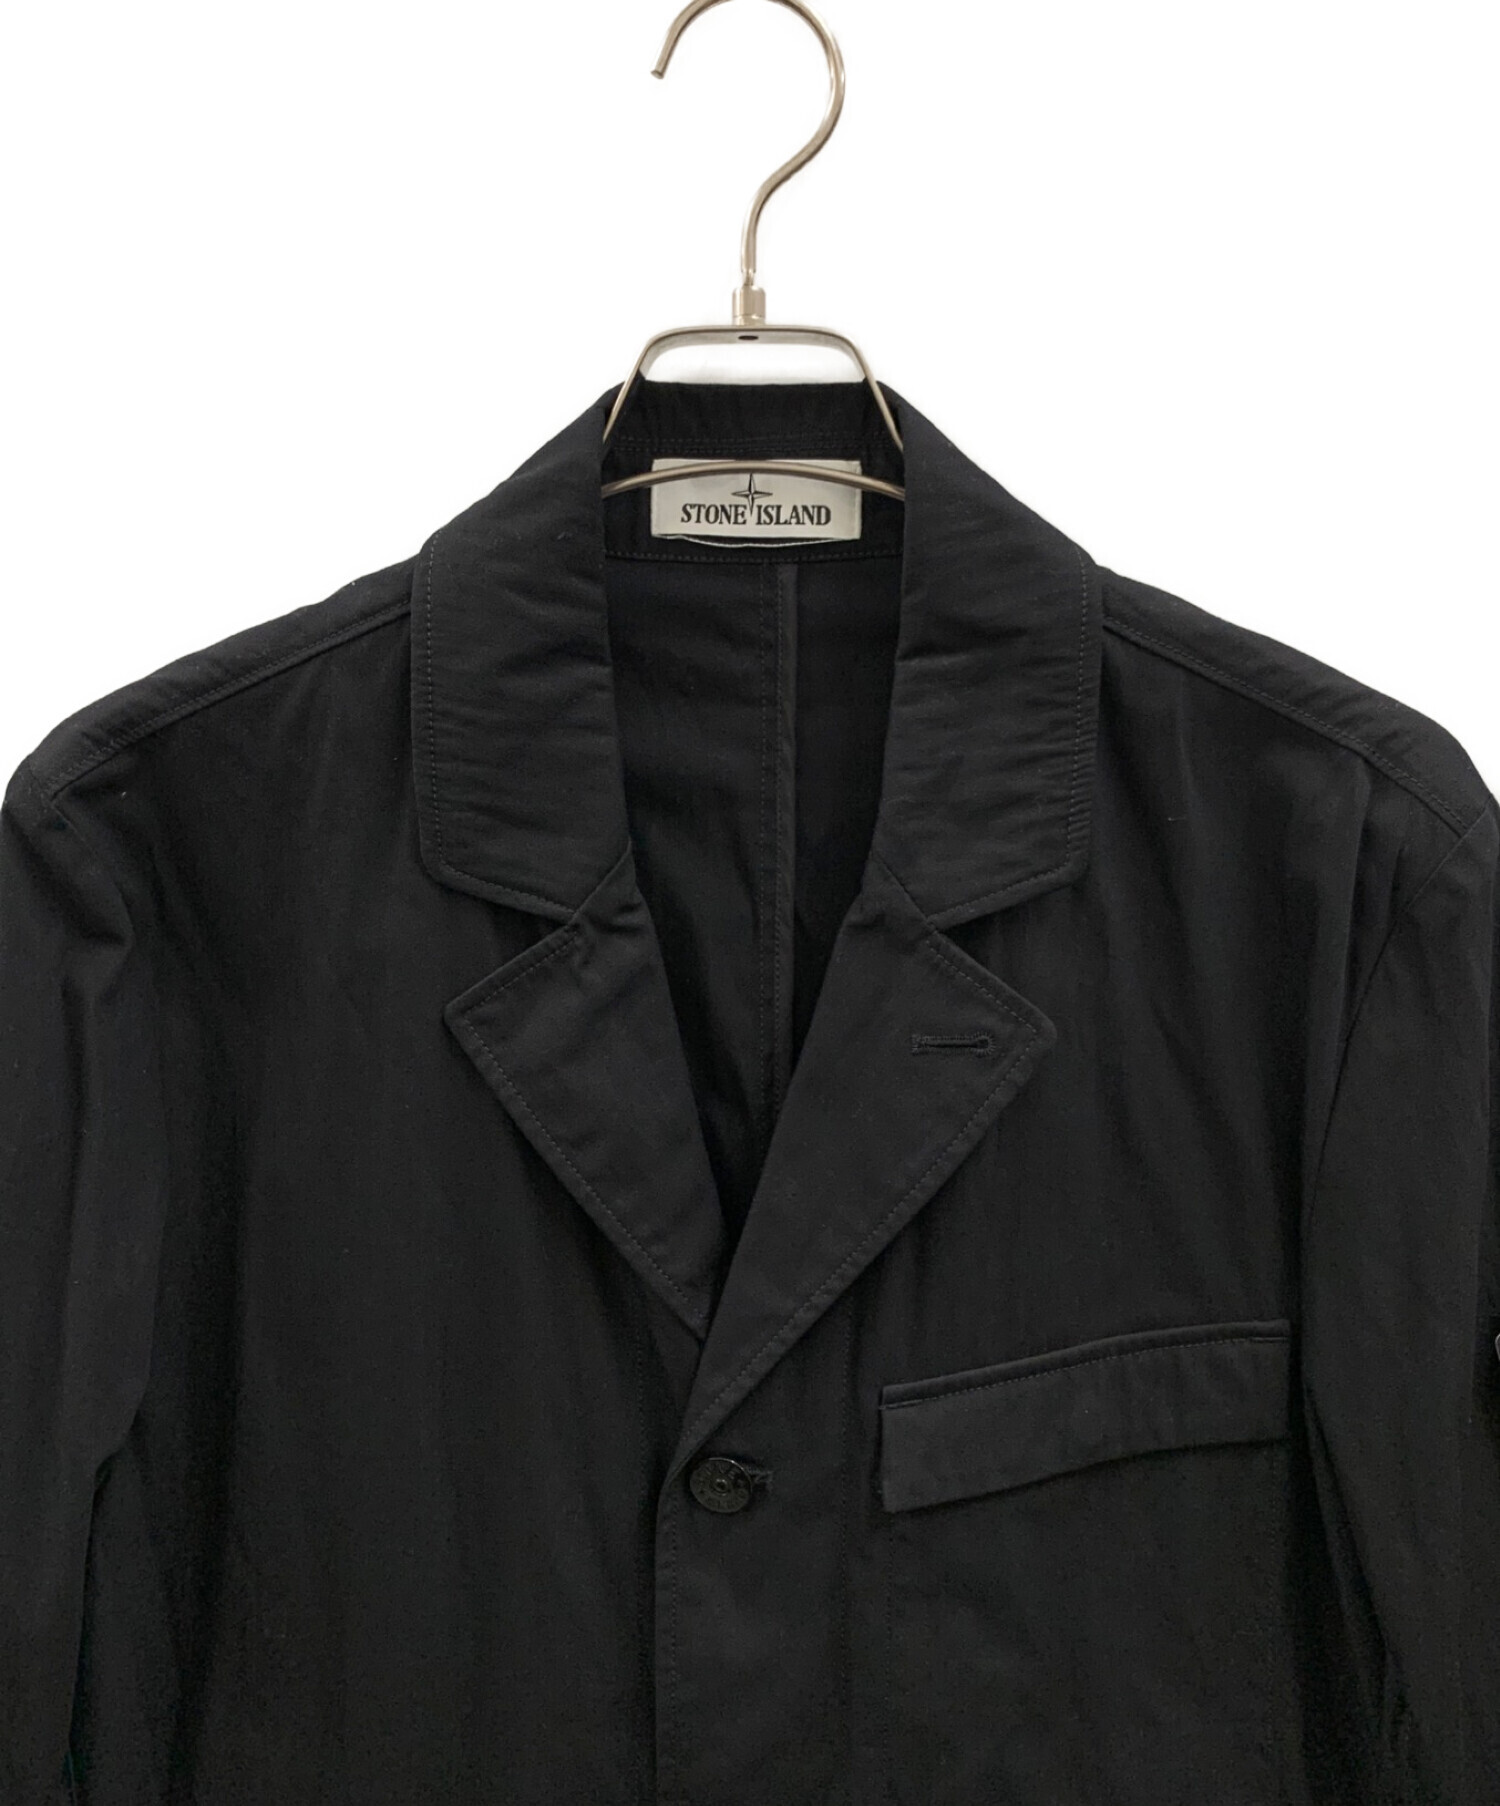 STONE ISLAND (ストーンアイランド) ワークジャケット ブラック サイズ:L